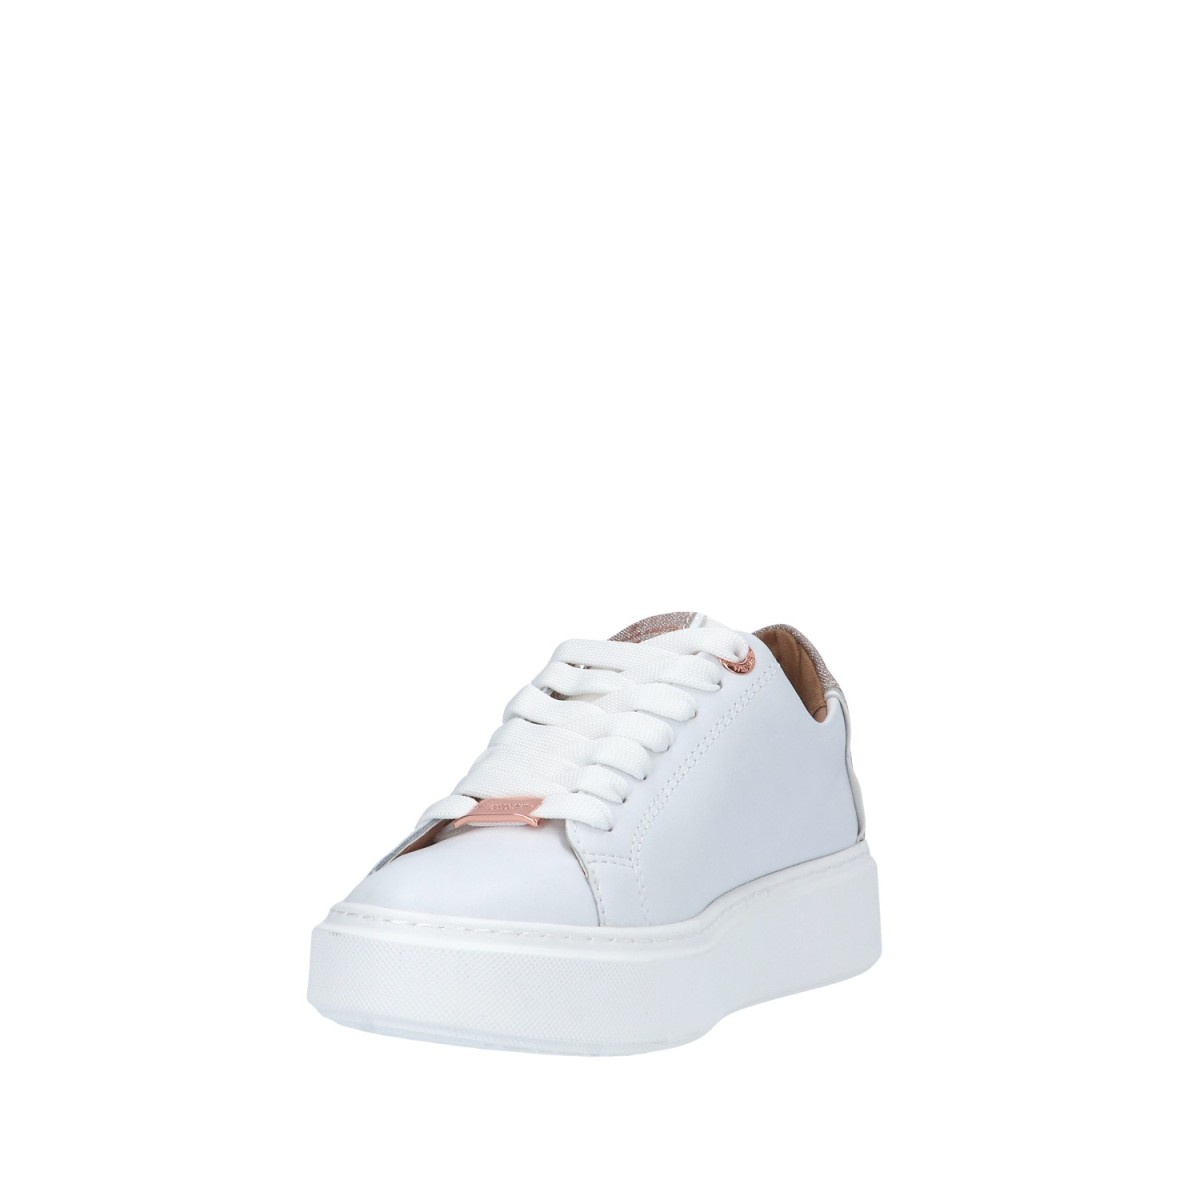 Alexander smith Sneaker Bianco/rame Gomma LDW-8290-WCP